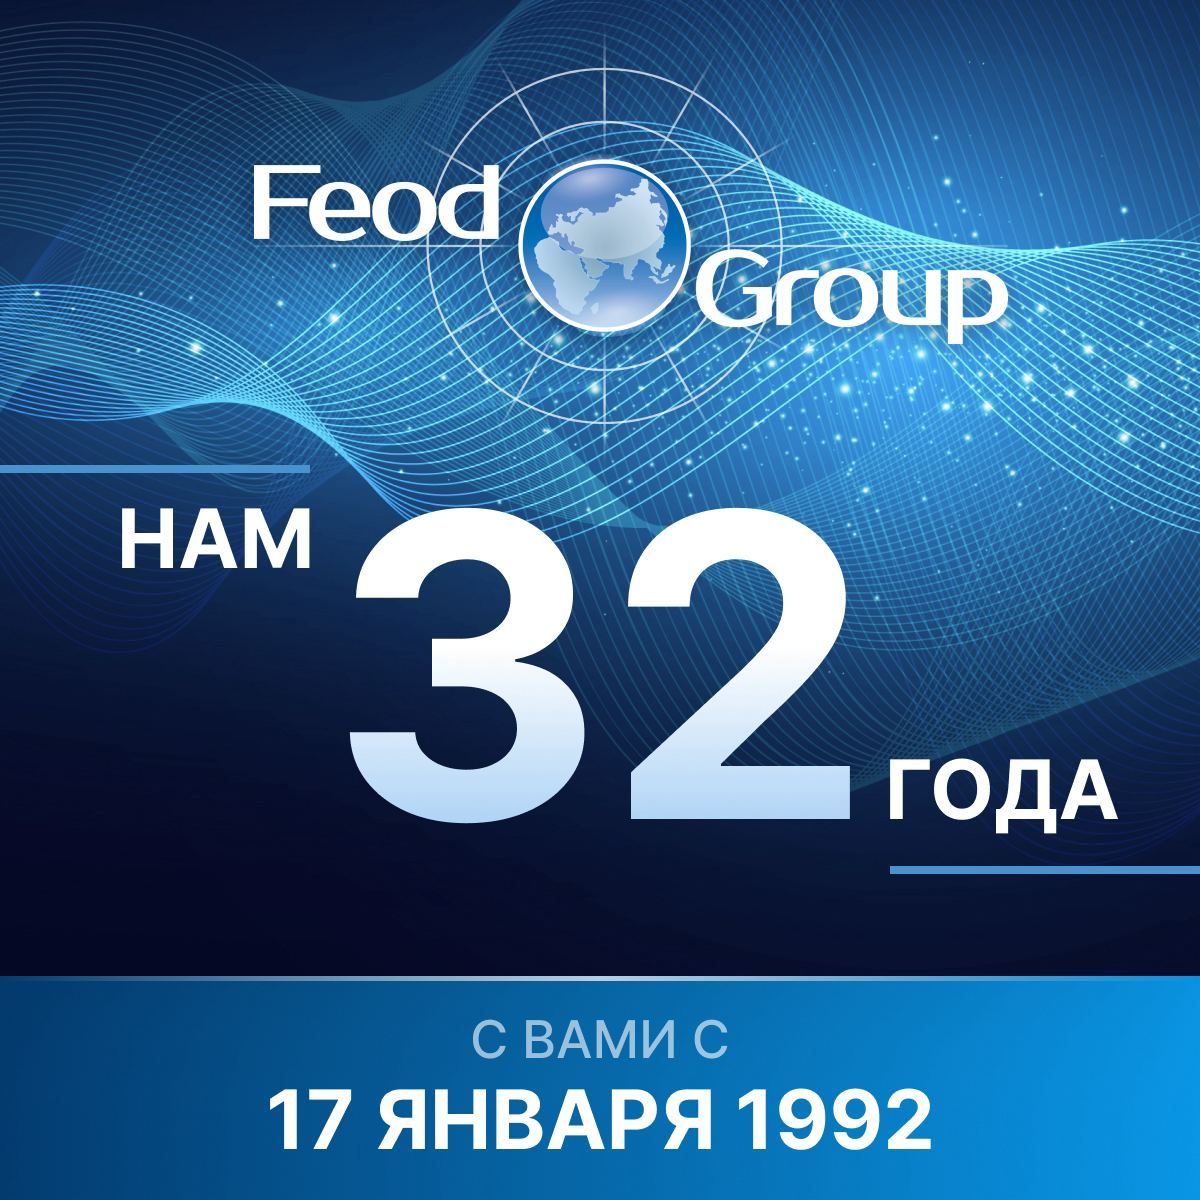 Компании FEOD GROUP 32 года!